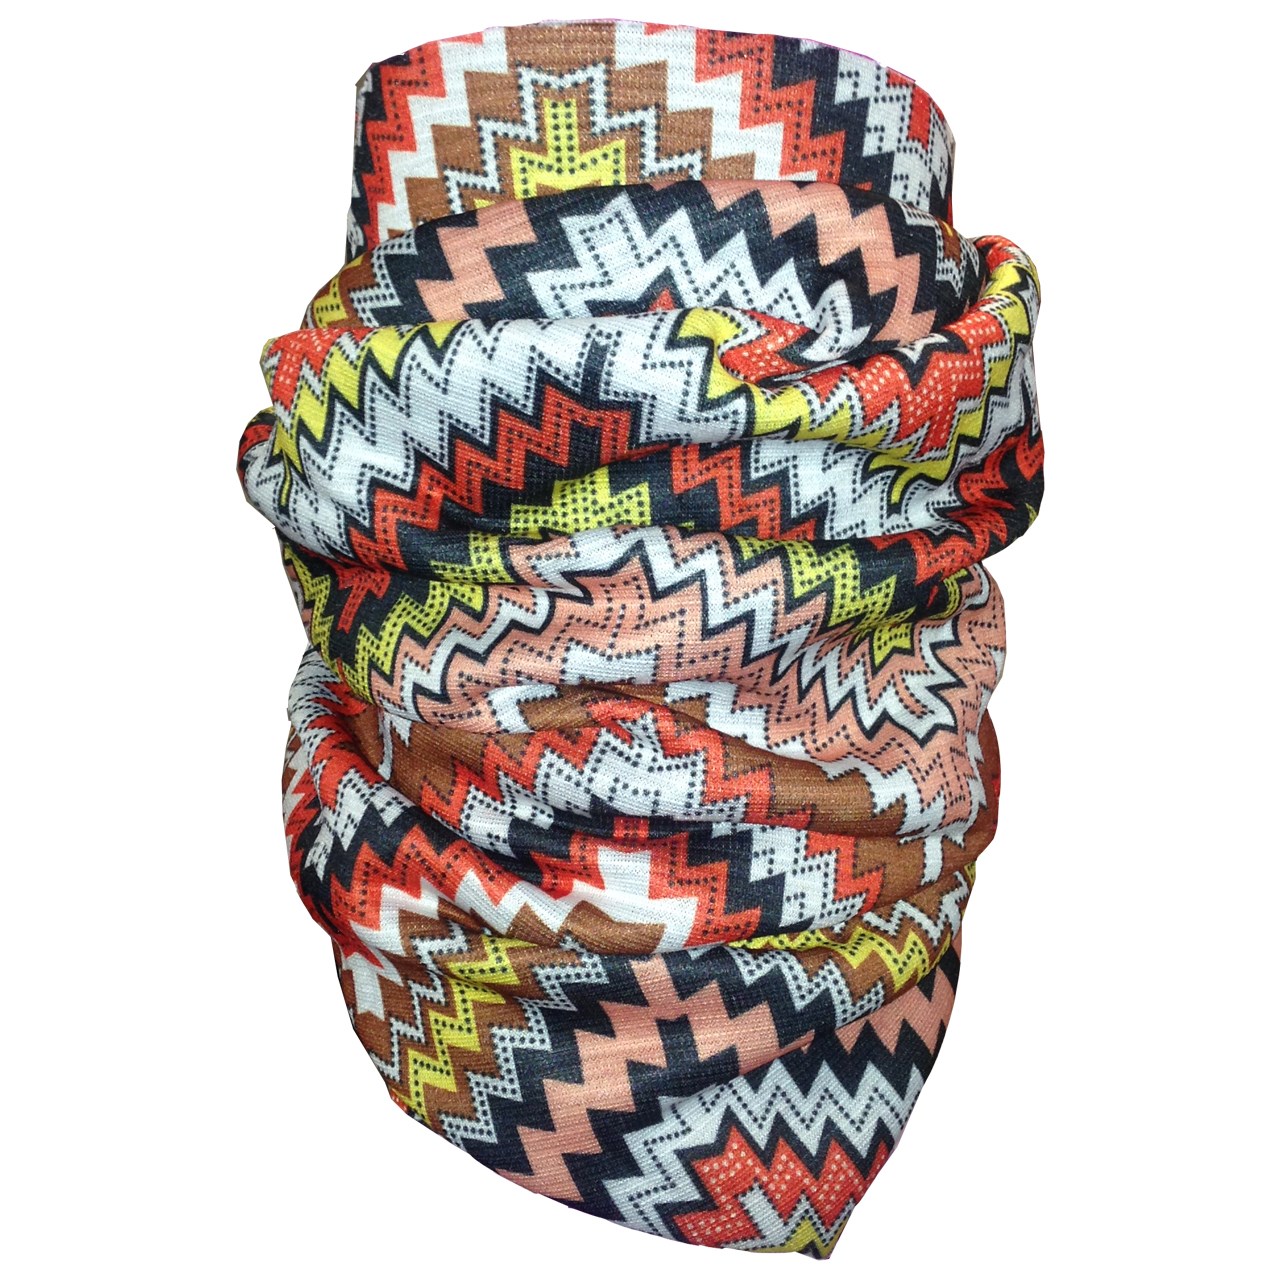 دستمال زمستانی سر و گردن مولتی باندانا مدل 6